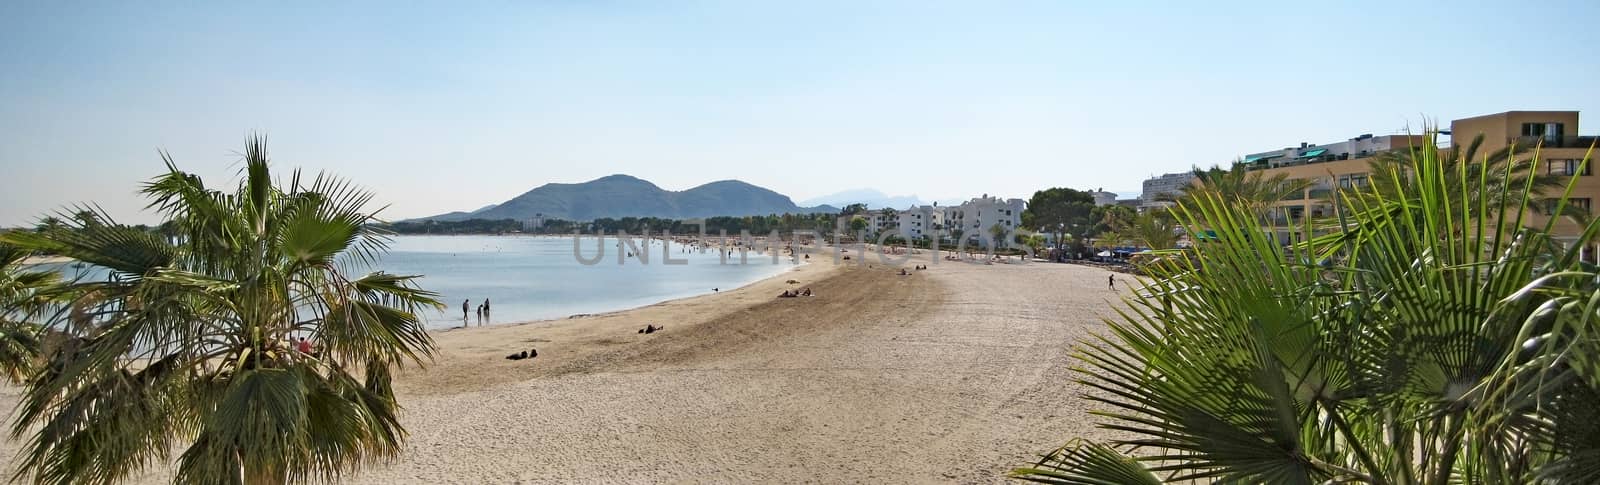 Alcudia beach panorama with palms, Majorca by aldorado